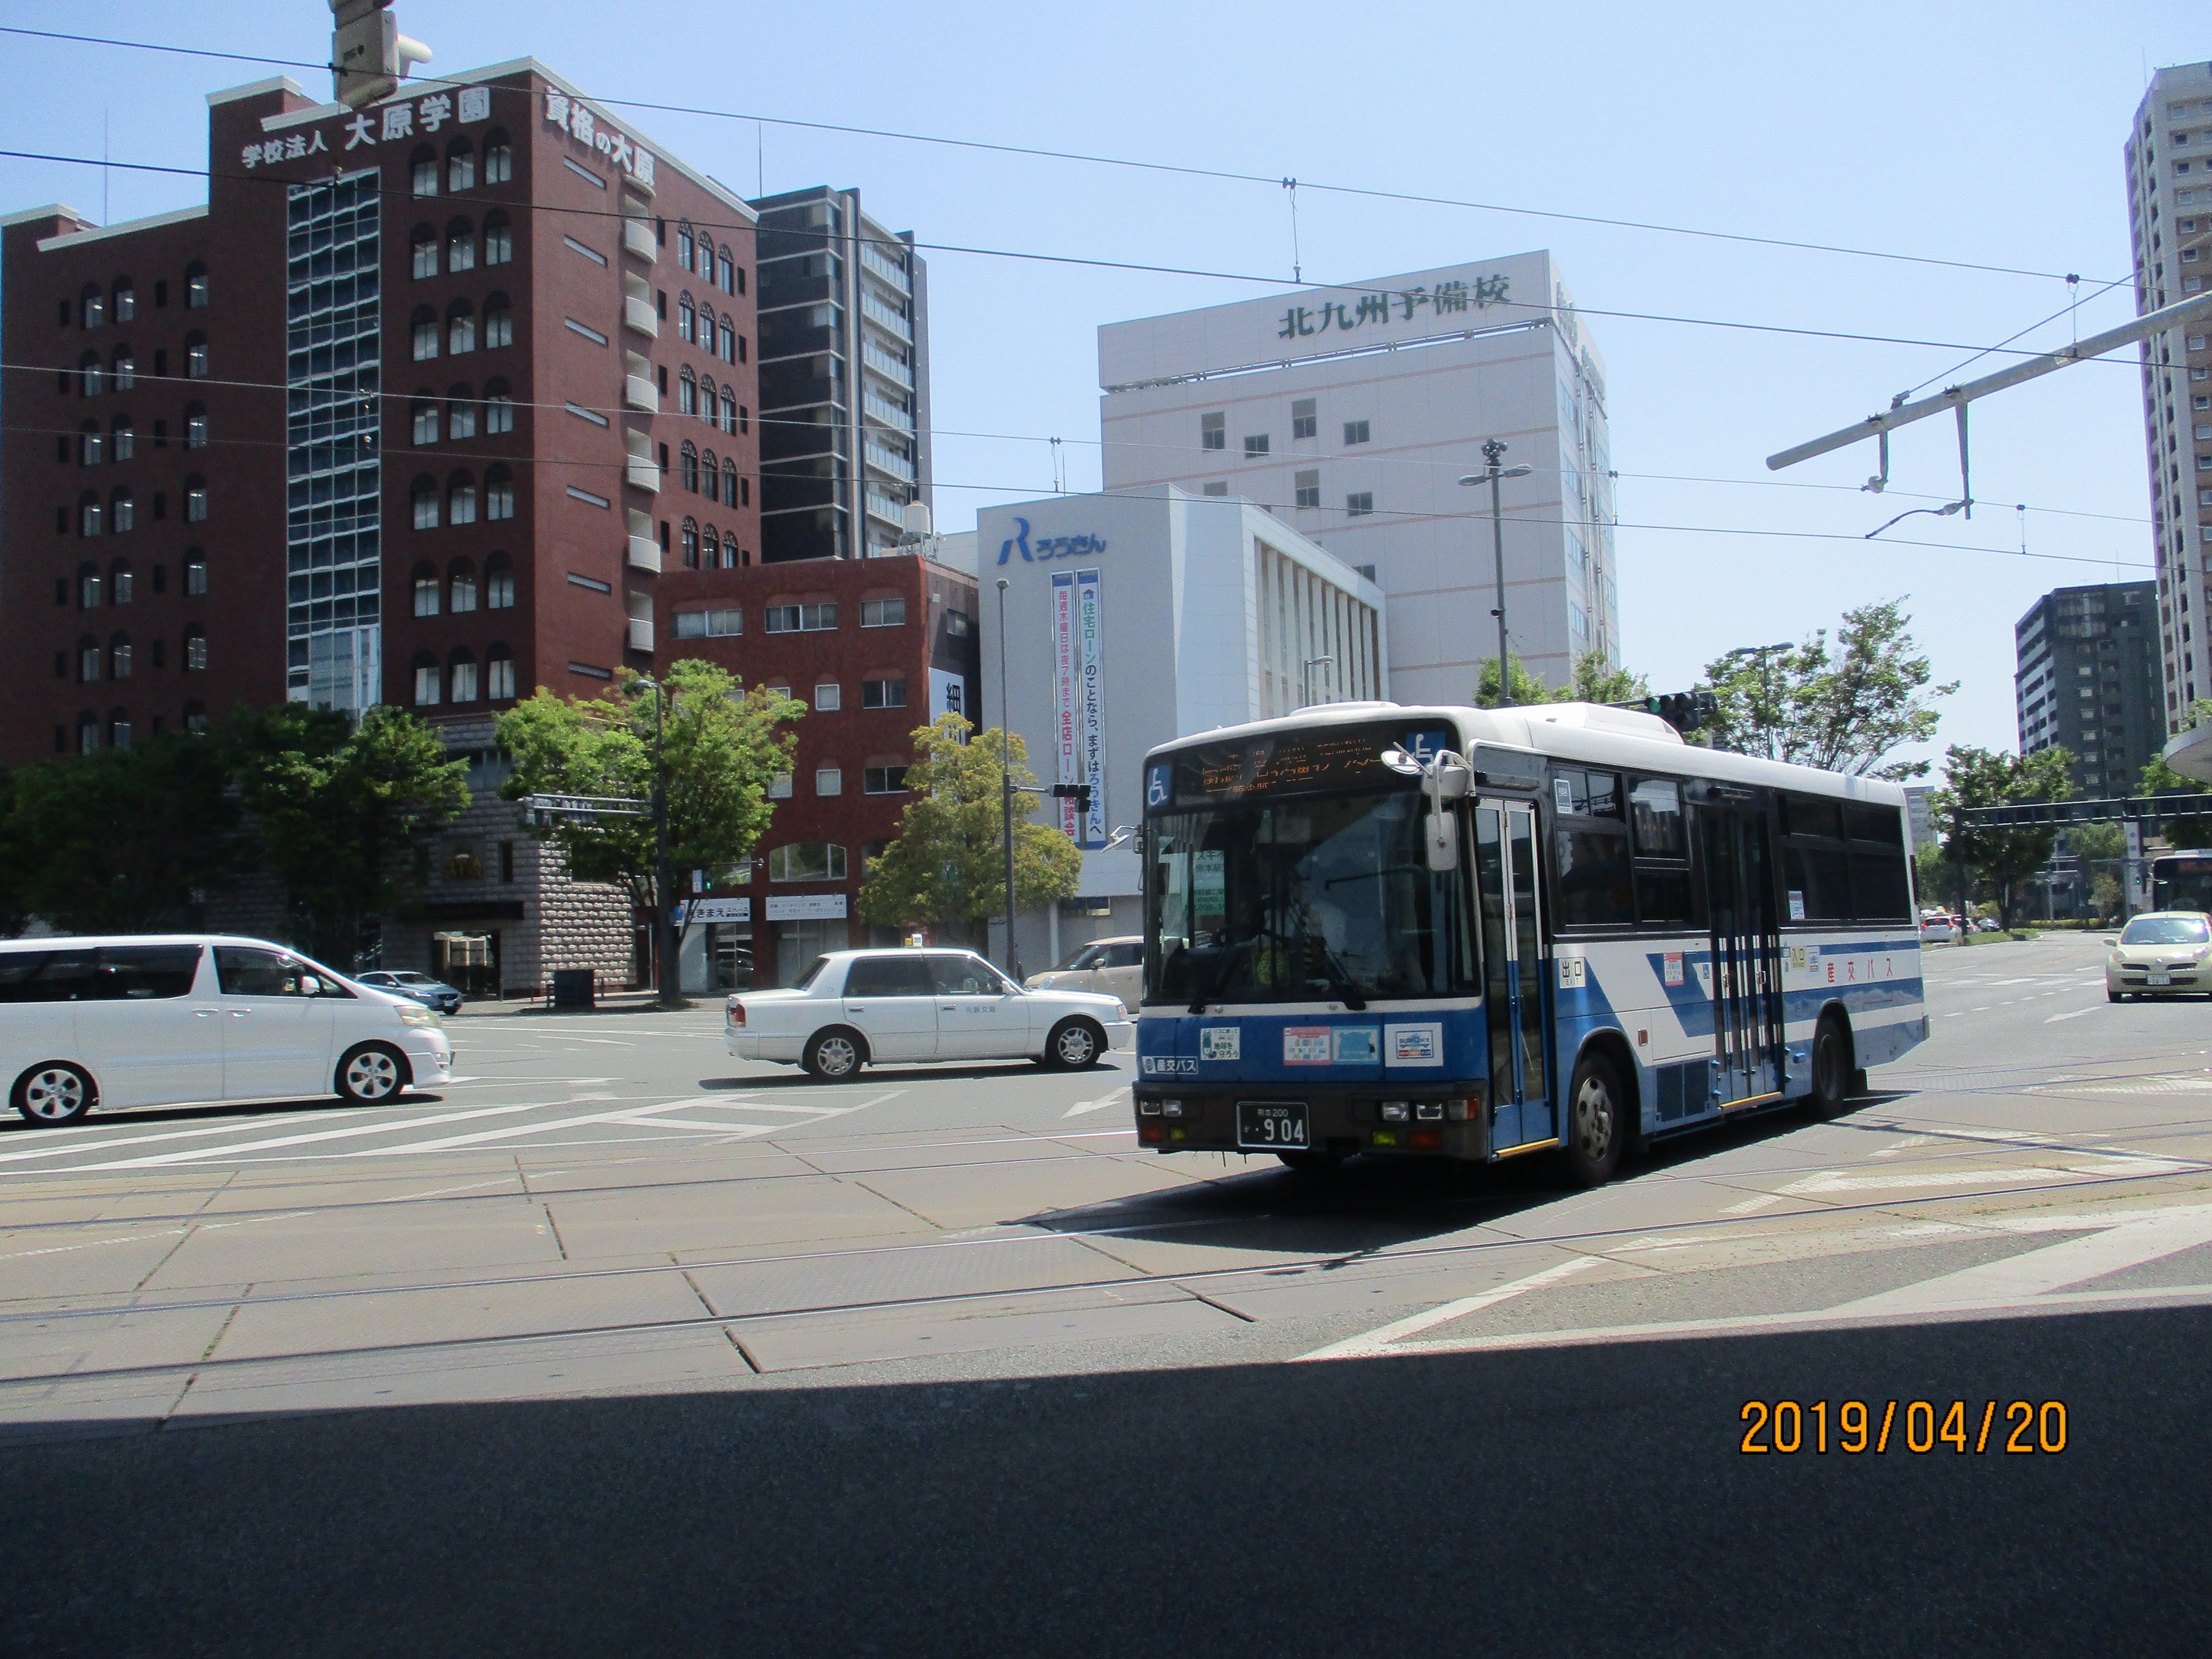 産交バス 904号車 303 101のブログ